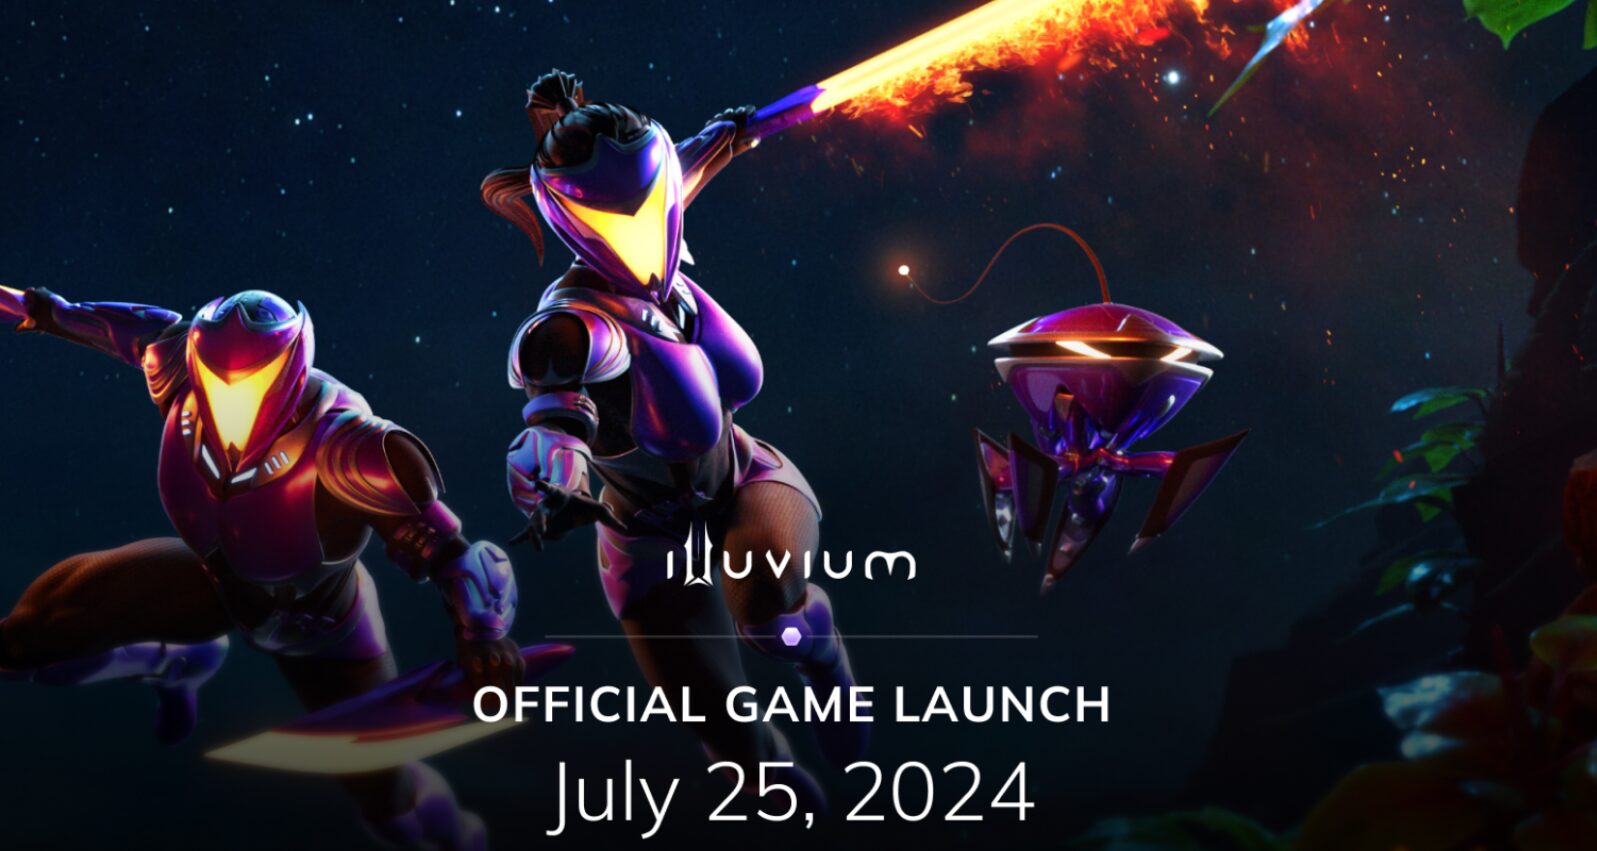 Očekávaná P2E hra Illuvium bude oficiálně spuštěna 25. července s novými funkcemi a odměnami